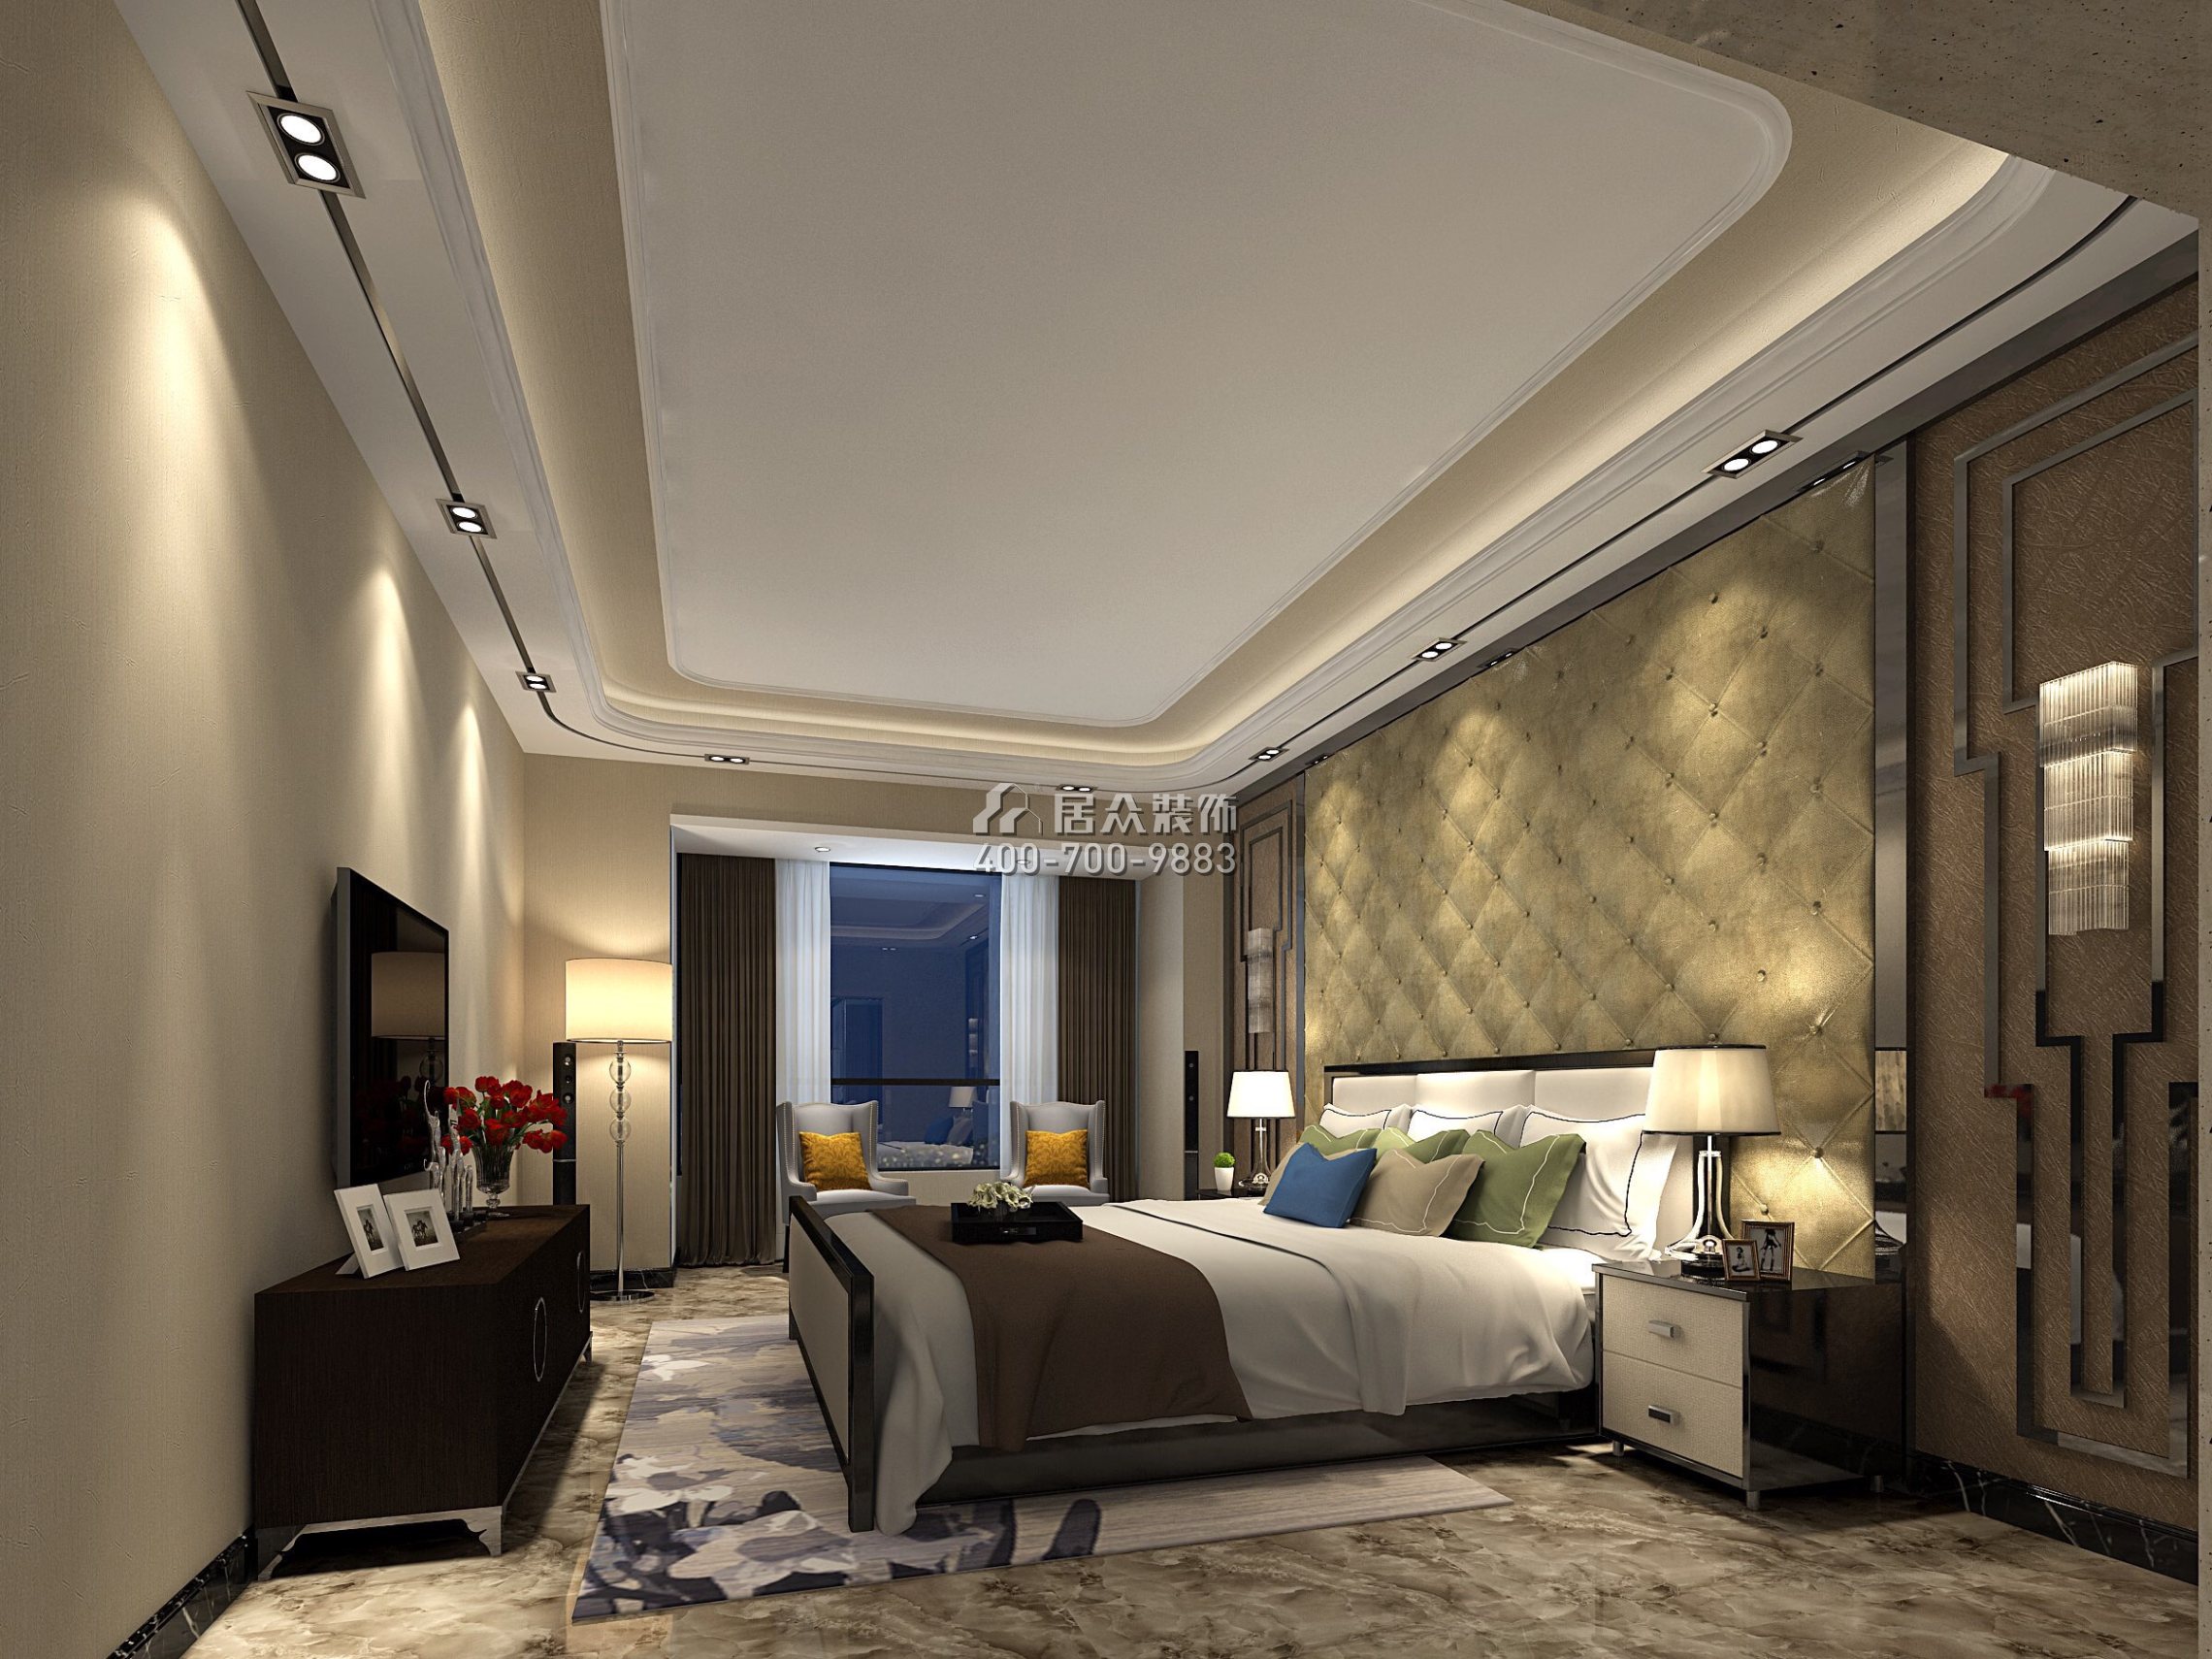 湛江万达广场160平方米现代简约风格平层户型卧室装修效果图